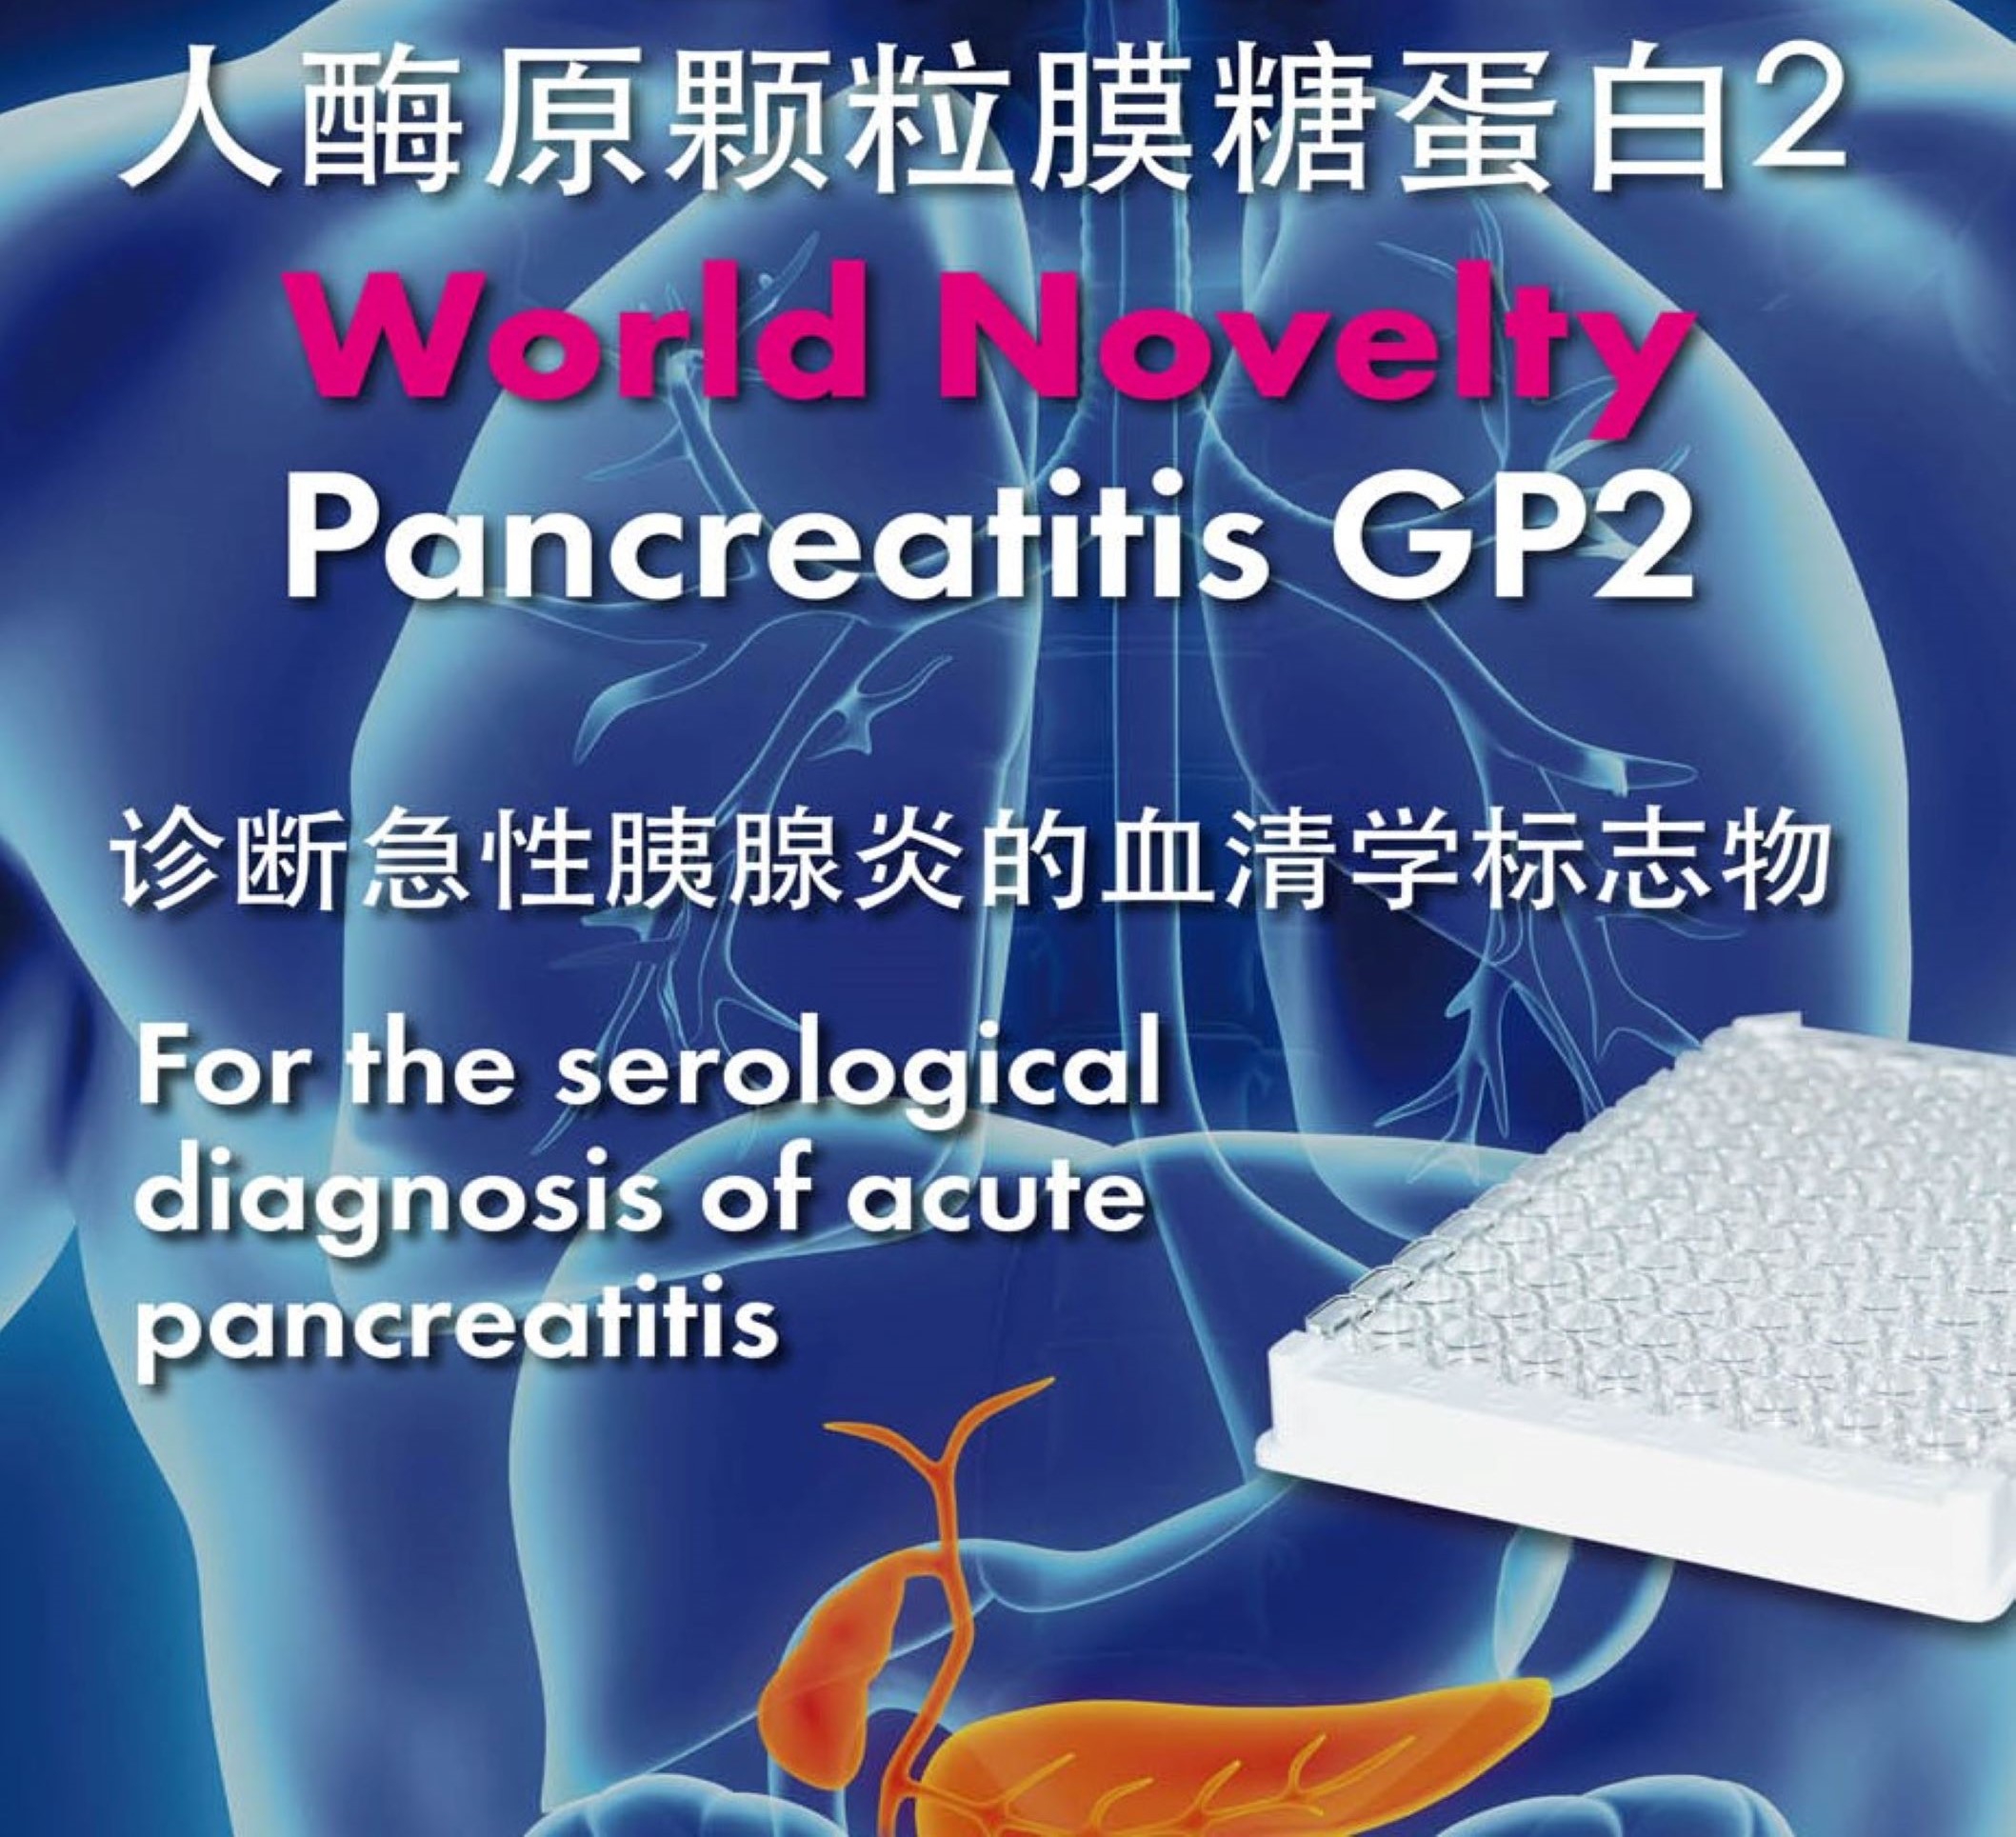 Pancreatitis GP2 人酶源颗粒膜糖蛋白2检测试剂盒